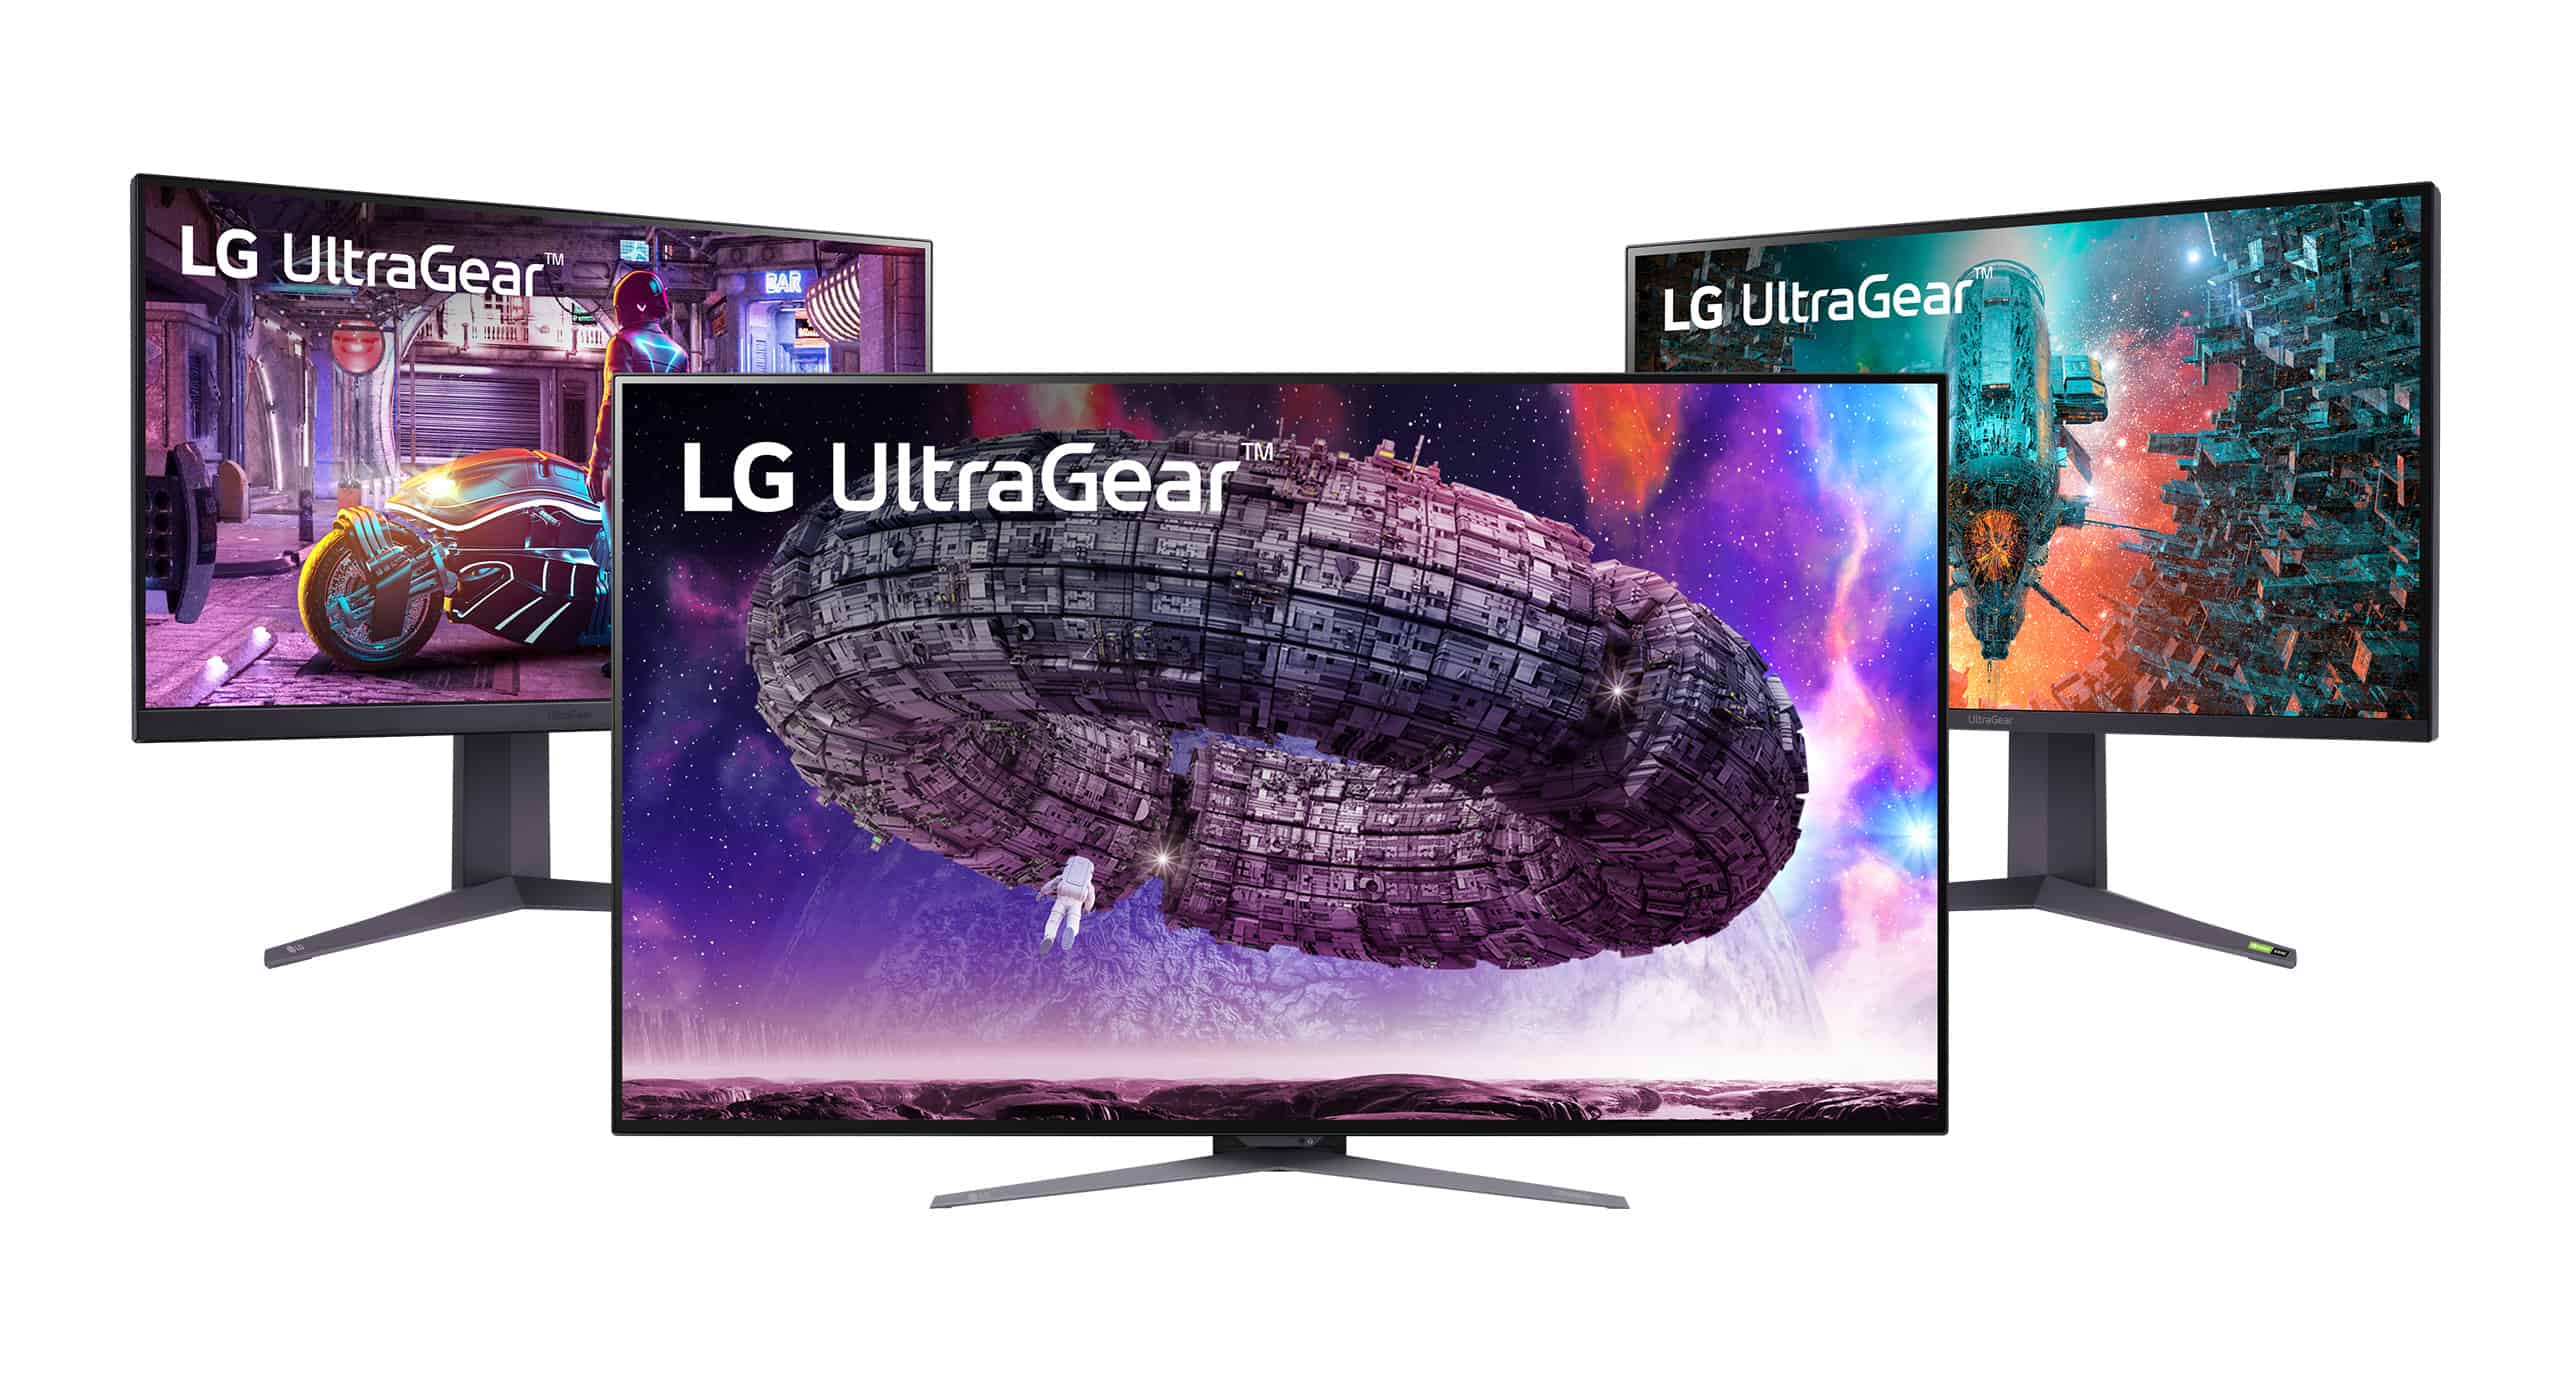 LG atualiza sua linha UltraGear de monitores gamers com modelo OLED 4K de 48 polegadas